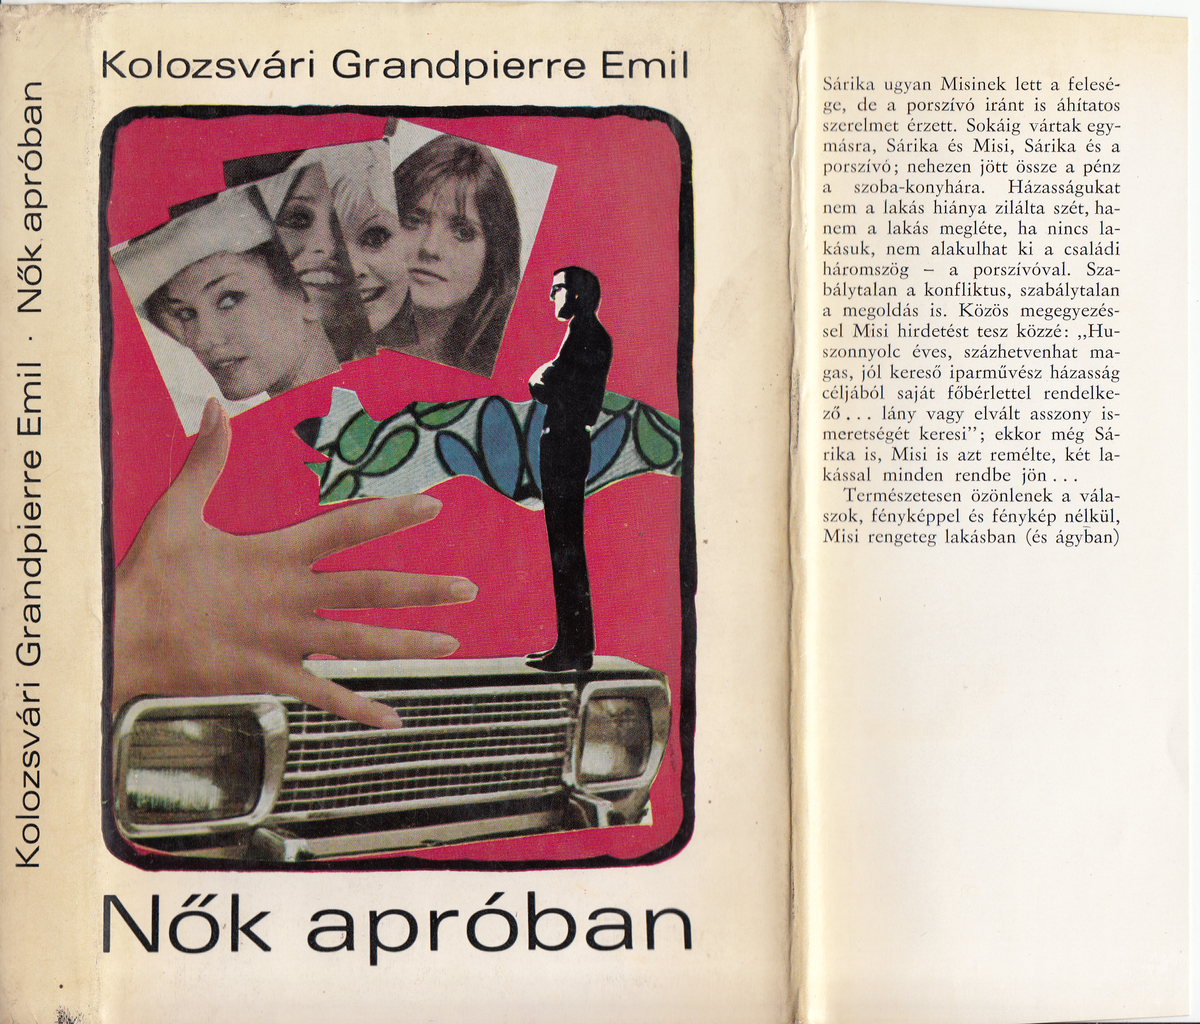 Kolozsvári Grandpierre Emil: Nők apróban, Kolozsvári Grandpierre Emil | PLM Collection